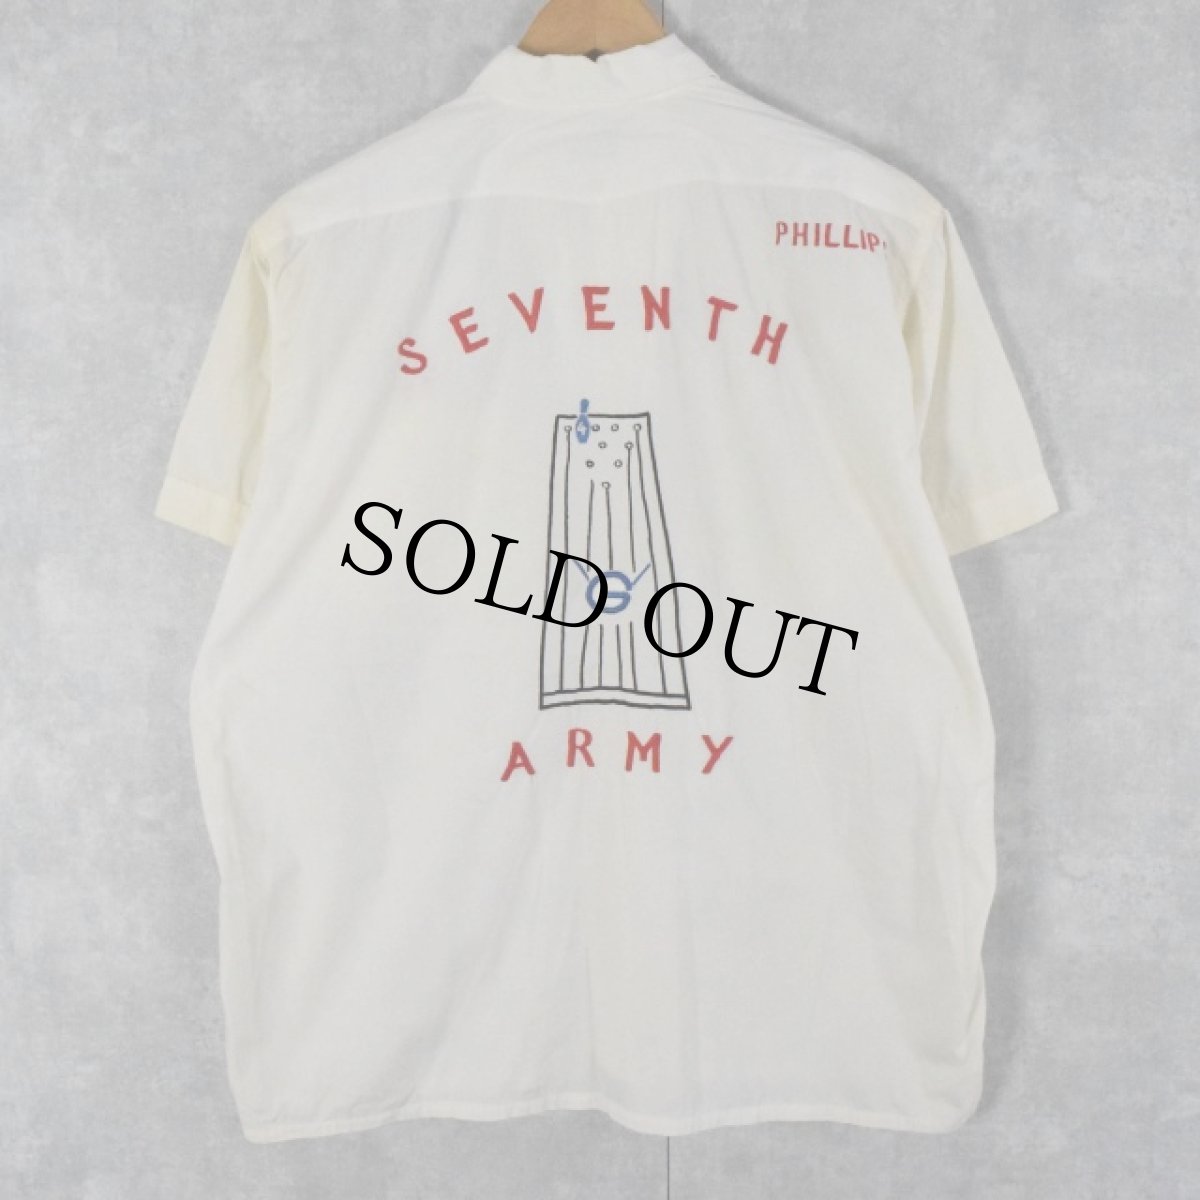 画像1: 60's Cavalier "SEVENTH ARMY" 刺繍ボーリングシャツ  (1)